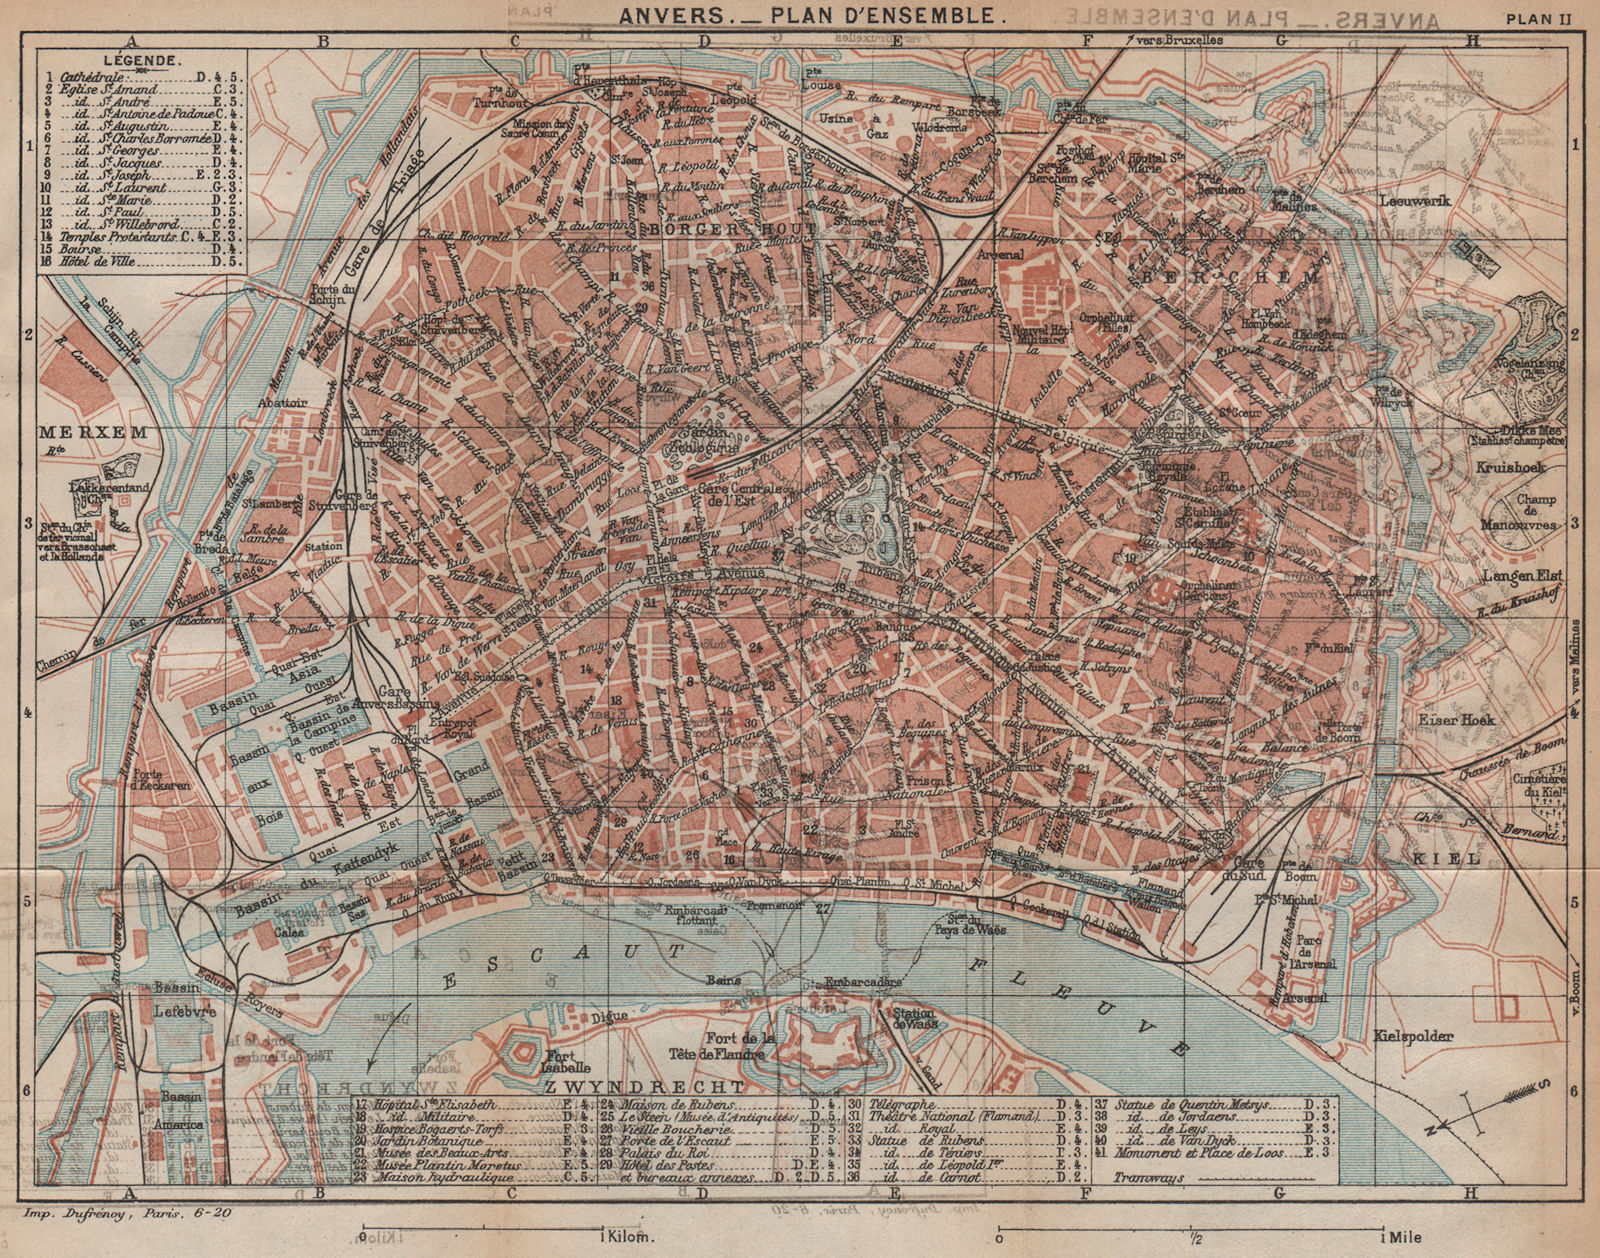 Associate Product ANTWERPEN-PLAN D'ENSEMBLE. Vintage town city map plan. Belgium. Anvers 1920